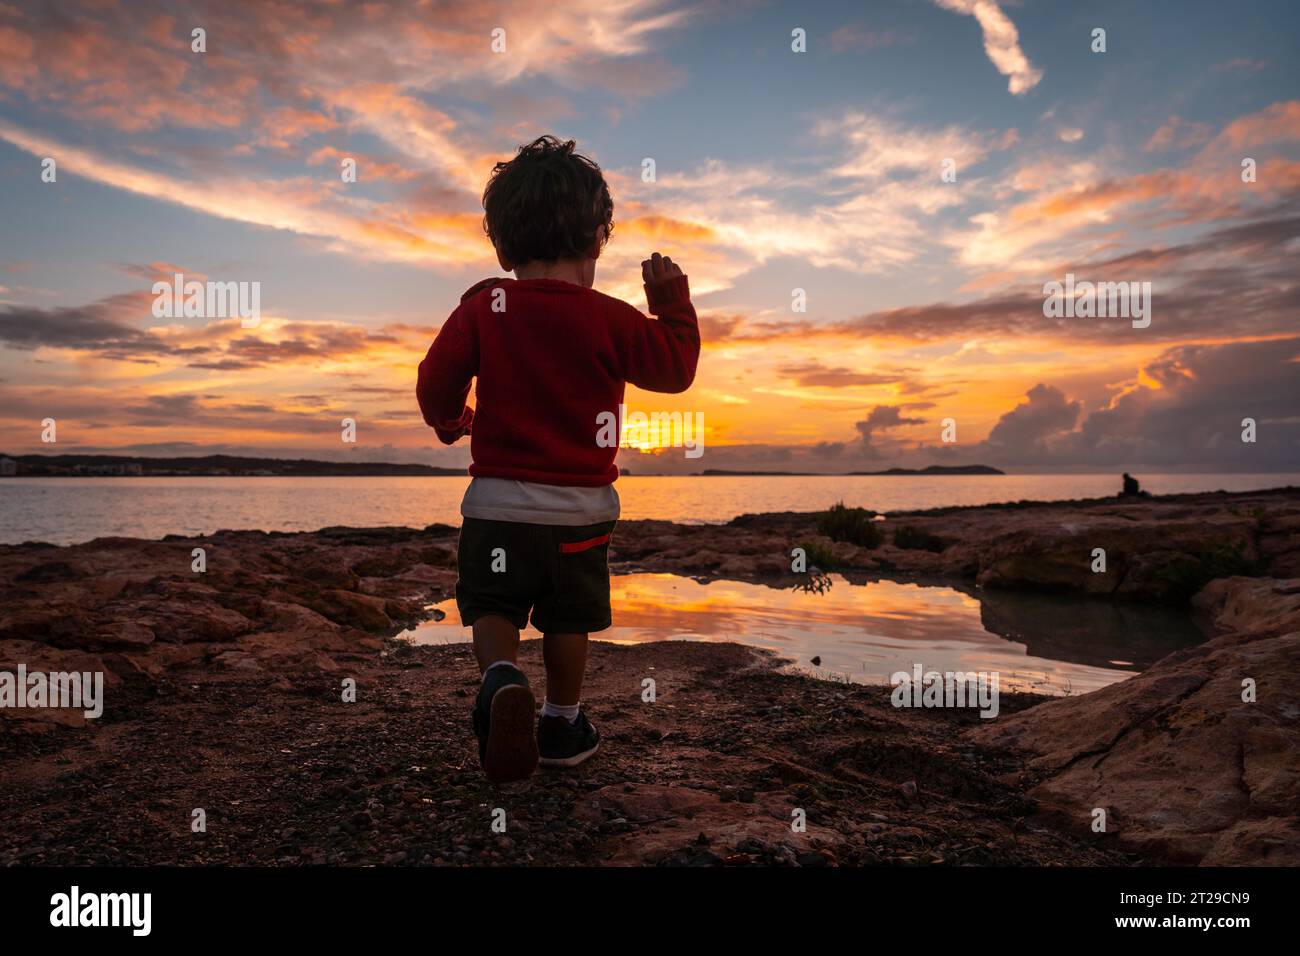 Tramonto a Ibiza in vacanza, un bambino che corre e ride in riva al mare a San Antonio Abad Foto Stock